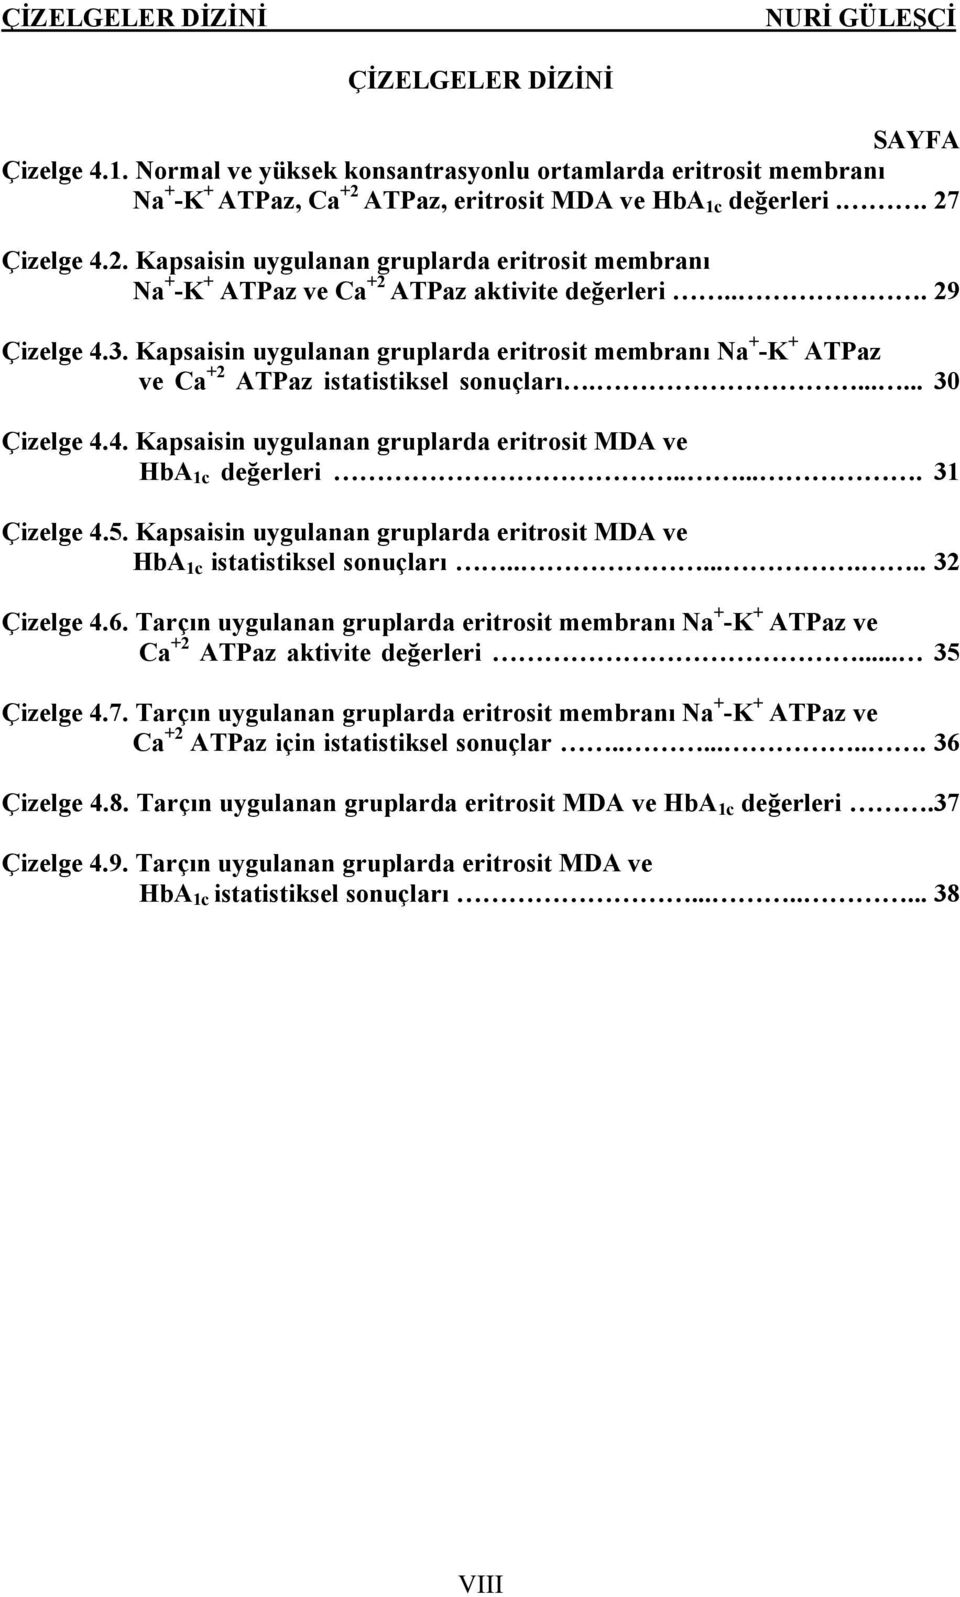 Kapsaisin uygulanan gruplarda eritrosit membranı Na + -K + ATPaz ve Ca +2 ATPaz istatistiksel sonuçları....... 30... Çizelge 4.4. Kapsaisin uygulanan gruplarda eritrosit MDA ve HbA 1c değerleri...... 31.